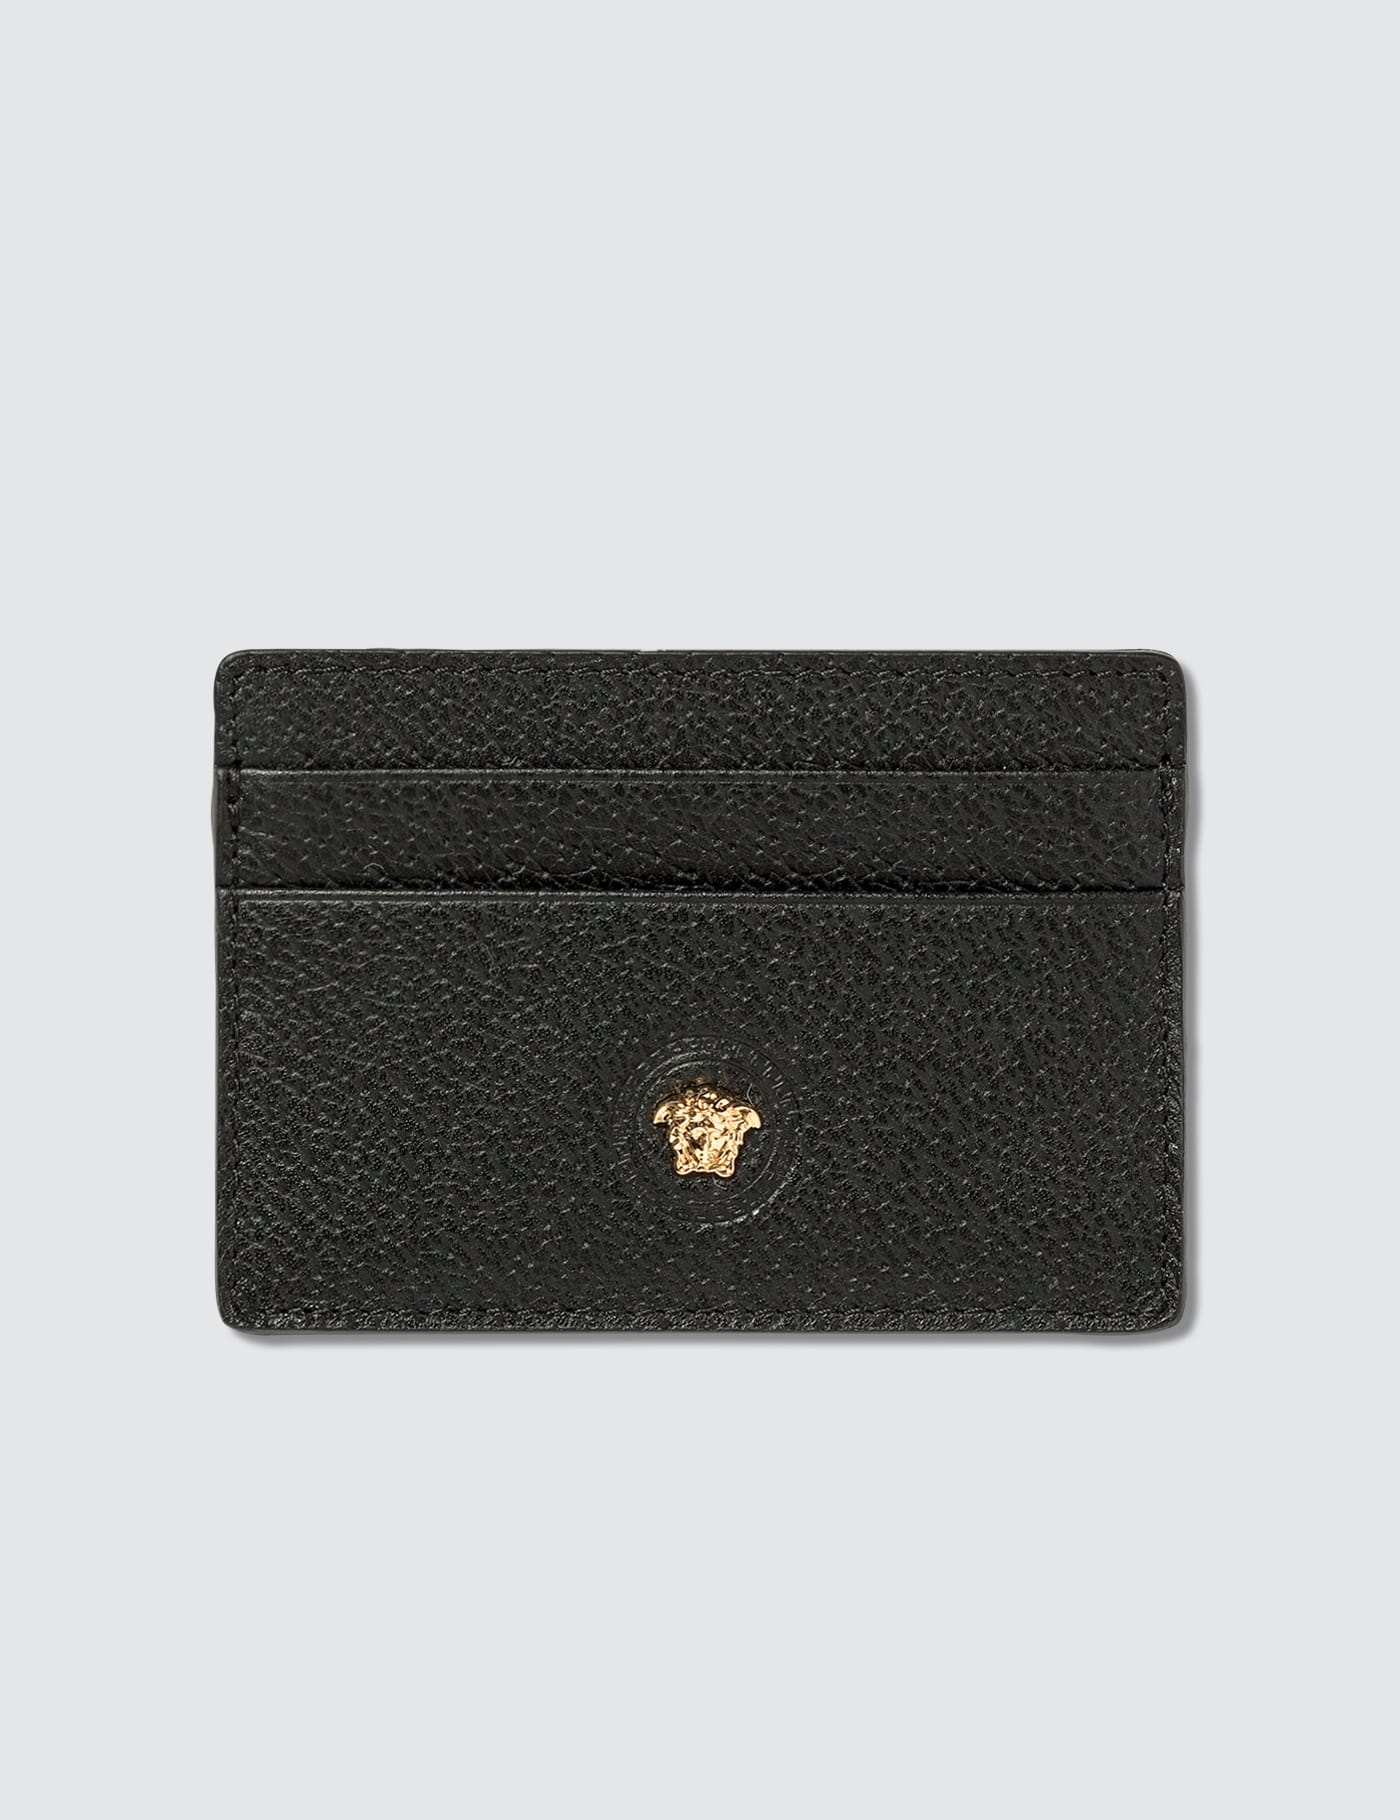 Versace Leather Card Holder Taschen Kartenetuis 